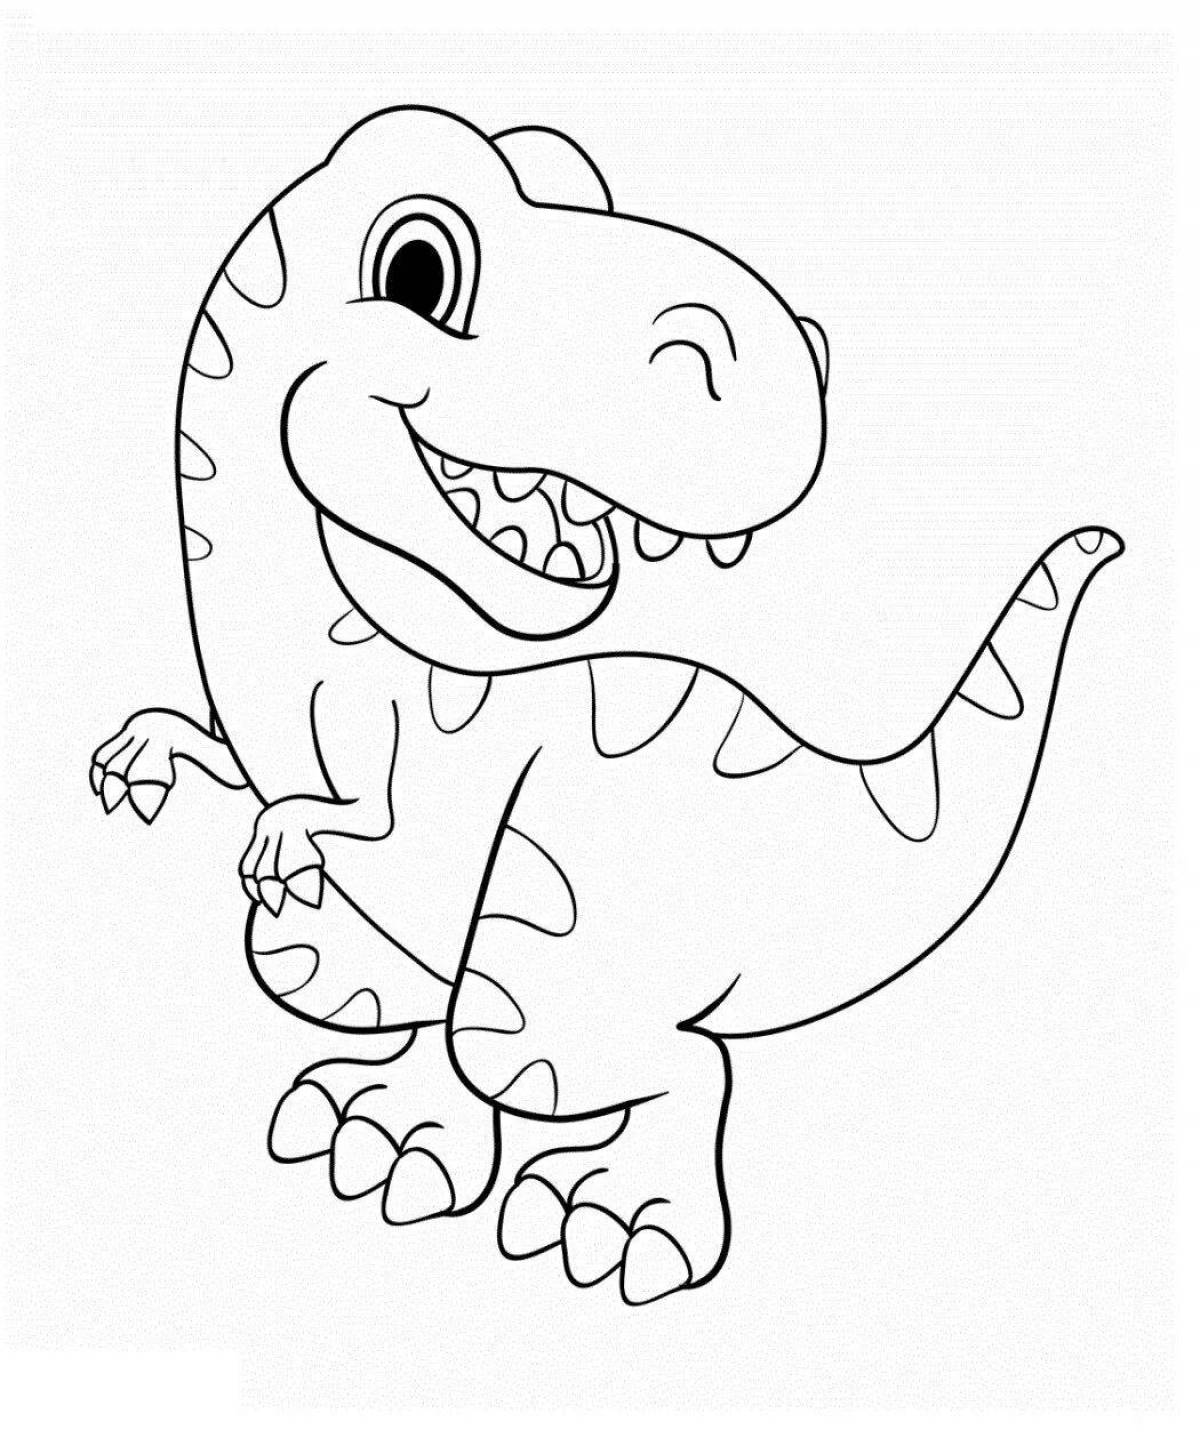 T-rex dynamic coloring